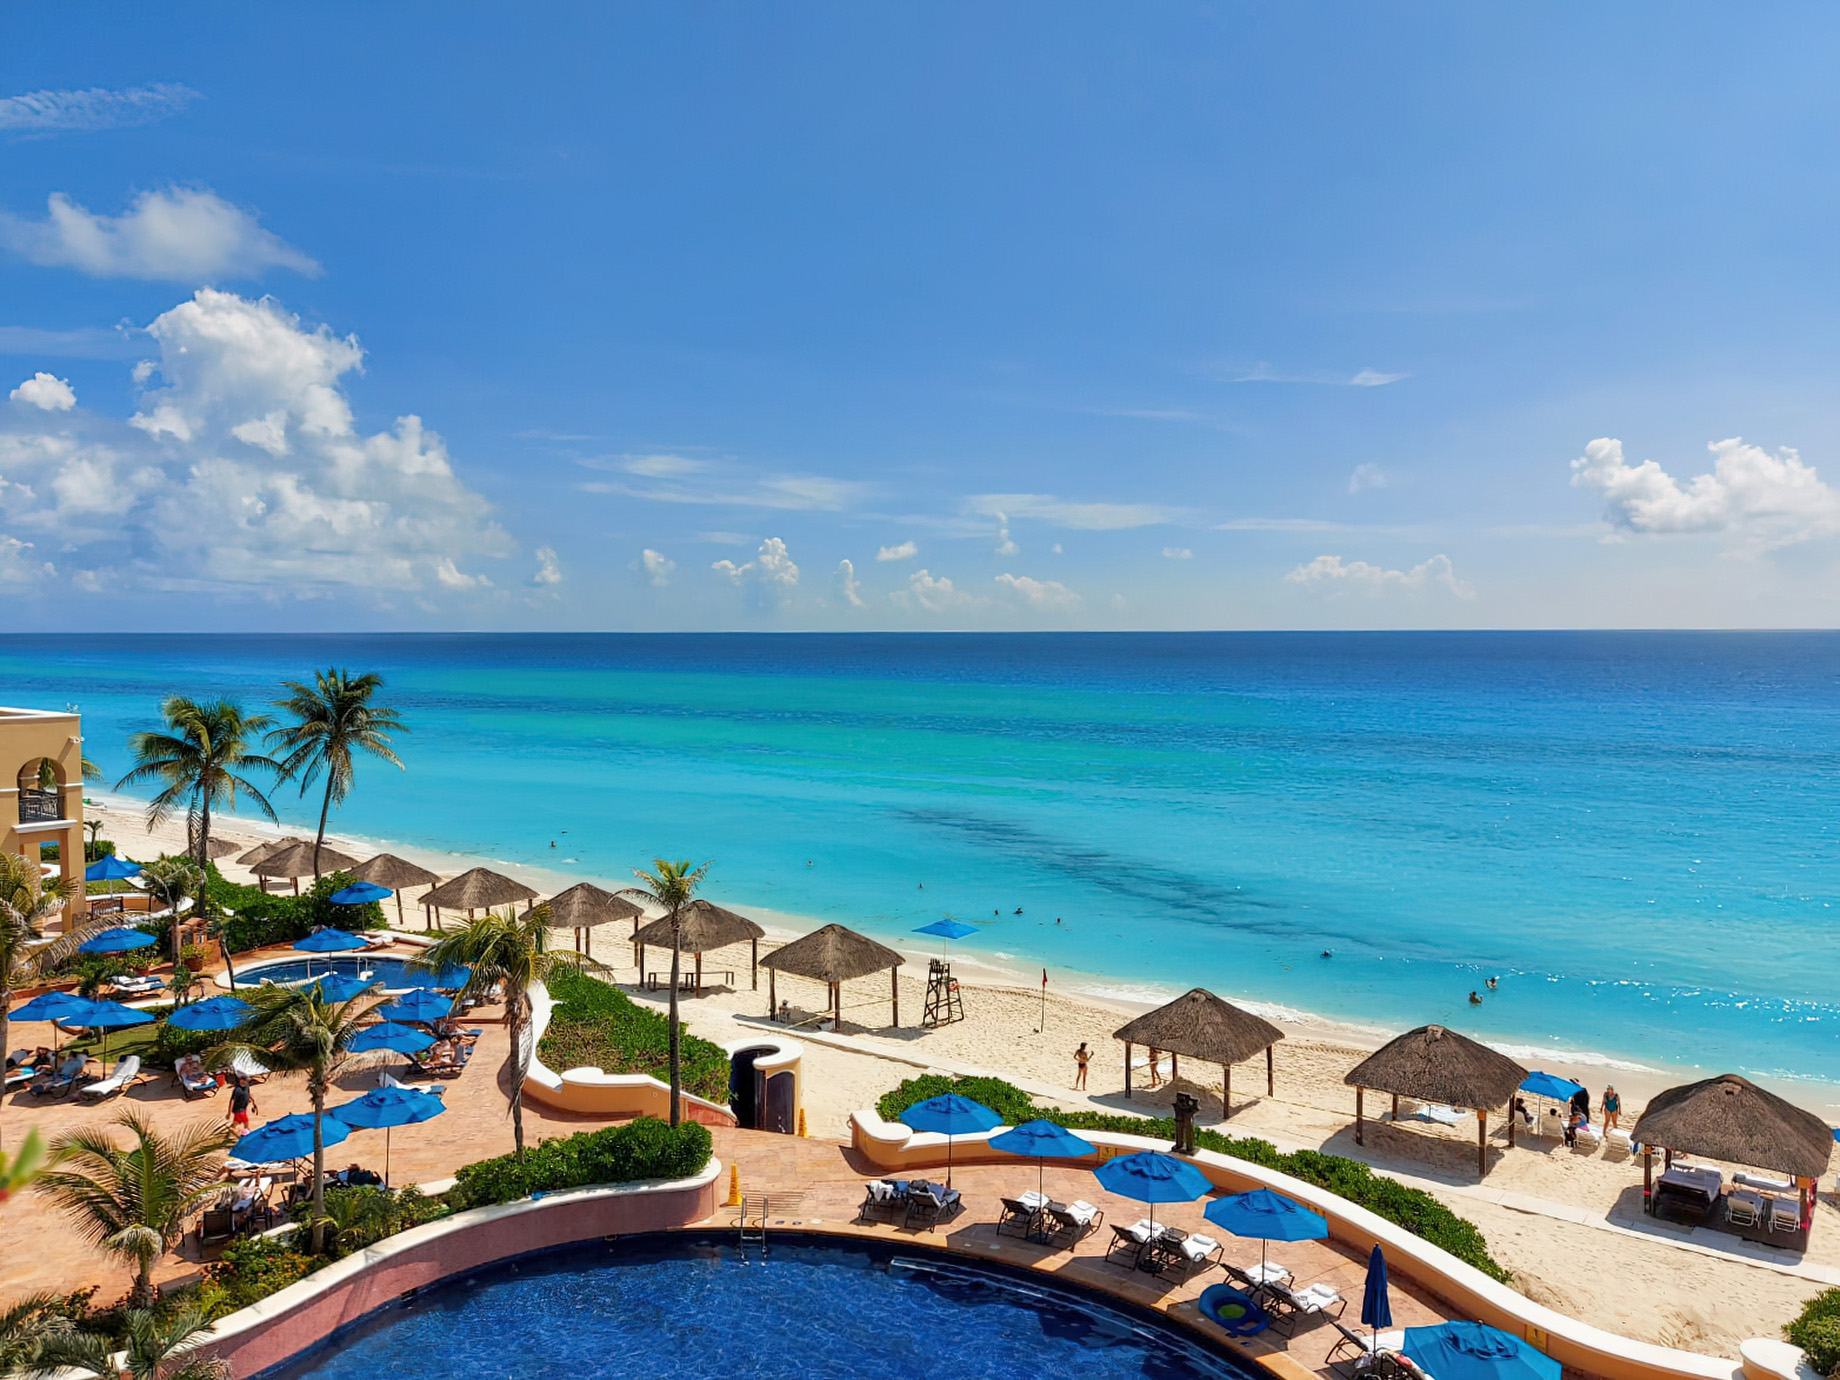 The Ritz-Carlton, Cancun Resort – Cancun, Mexico – Pool and Beach View Aerial